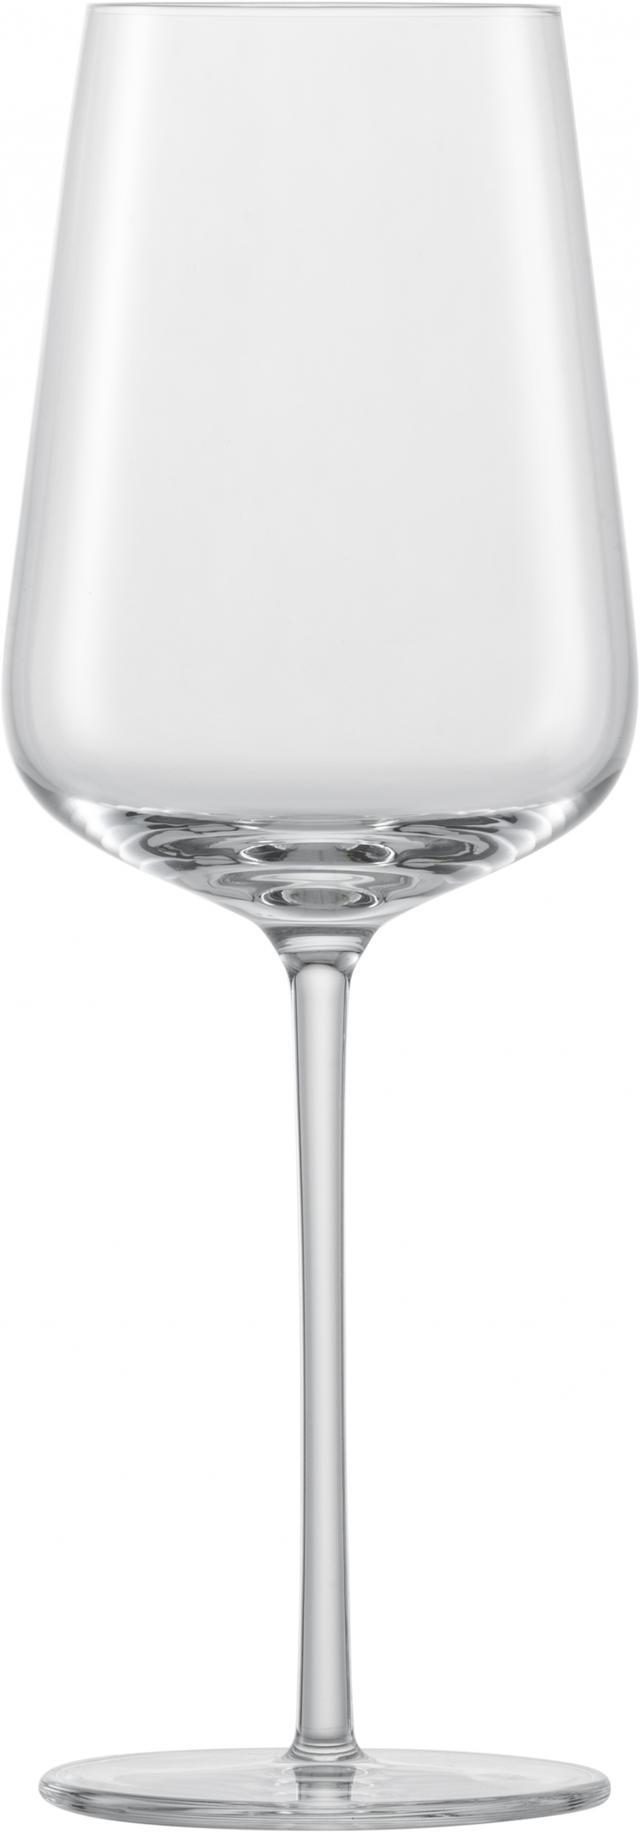 zwiesel glas vervino riesling wijnglas mp 0 - 0.406 ltr - geschenkverpakking 2 glazen